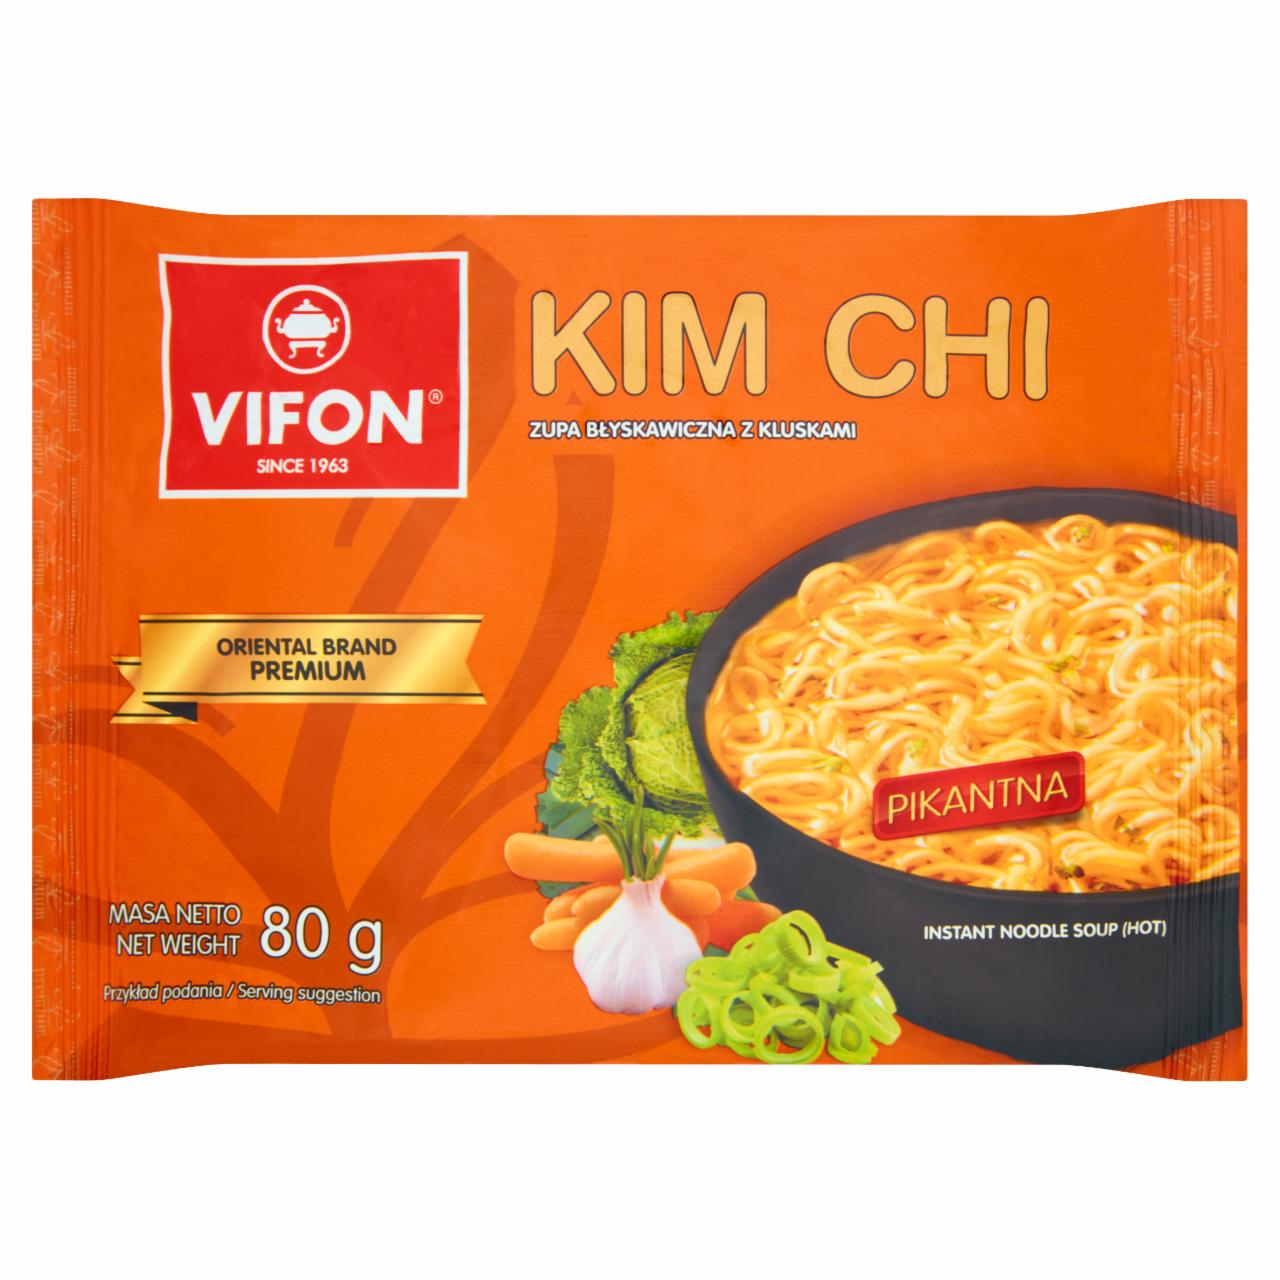 Fotografie - KimChi zupa błyskawiczna z kluskami pikantna Vifon